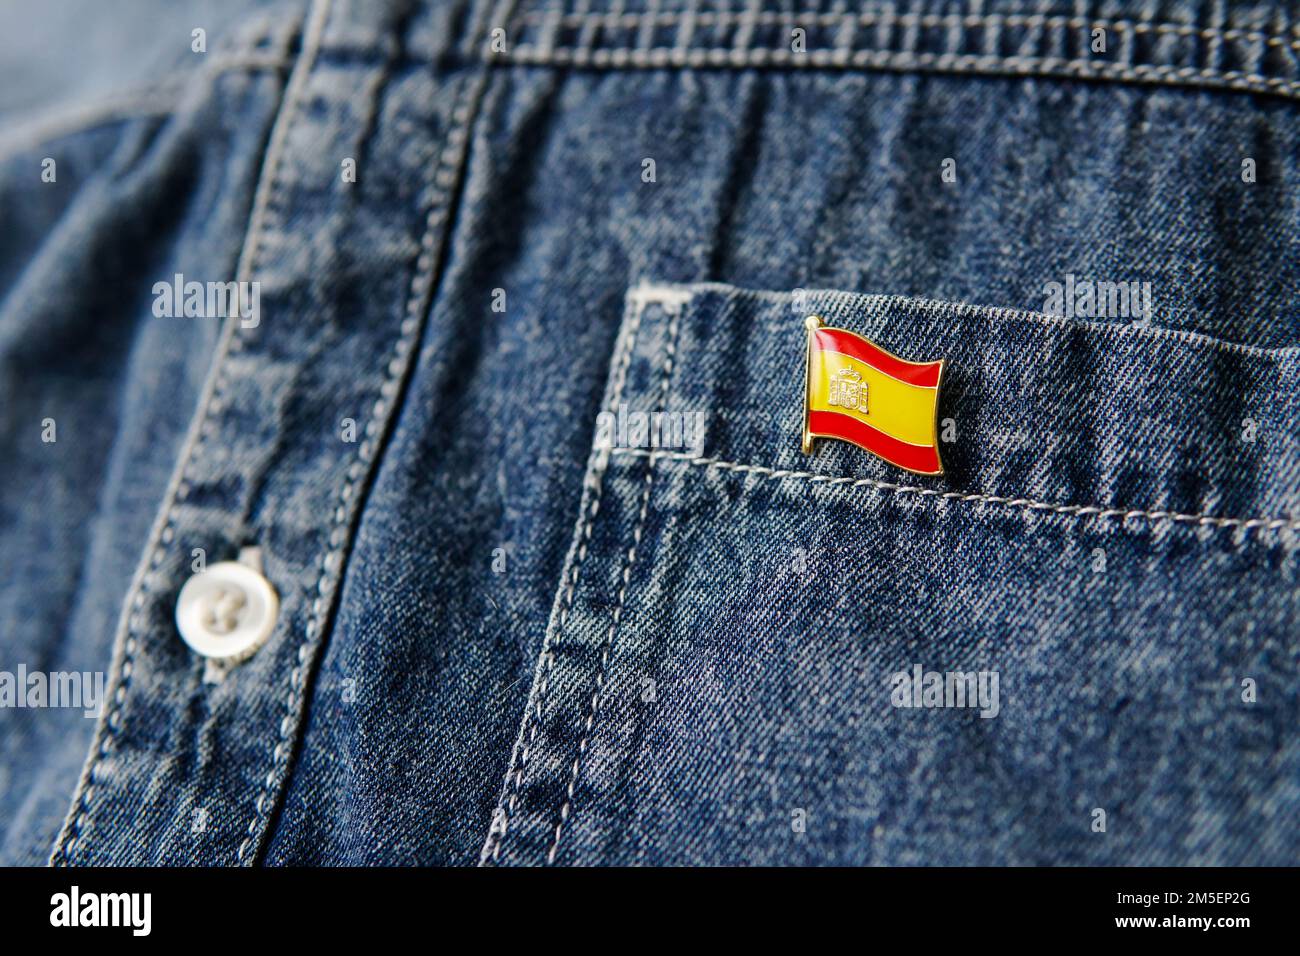 Badge en métal avec le drapeau de l'Espagne est épinglé sur la veste bleue de Jean. Espagne patriotisme concept. Jour de l'indépendance en Espagne. Banque D'Images